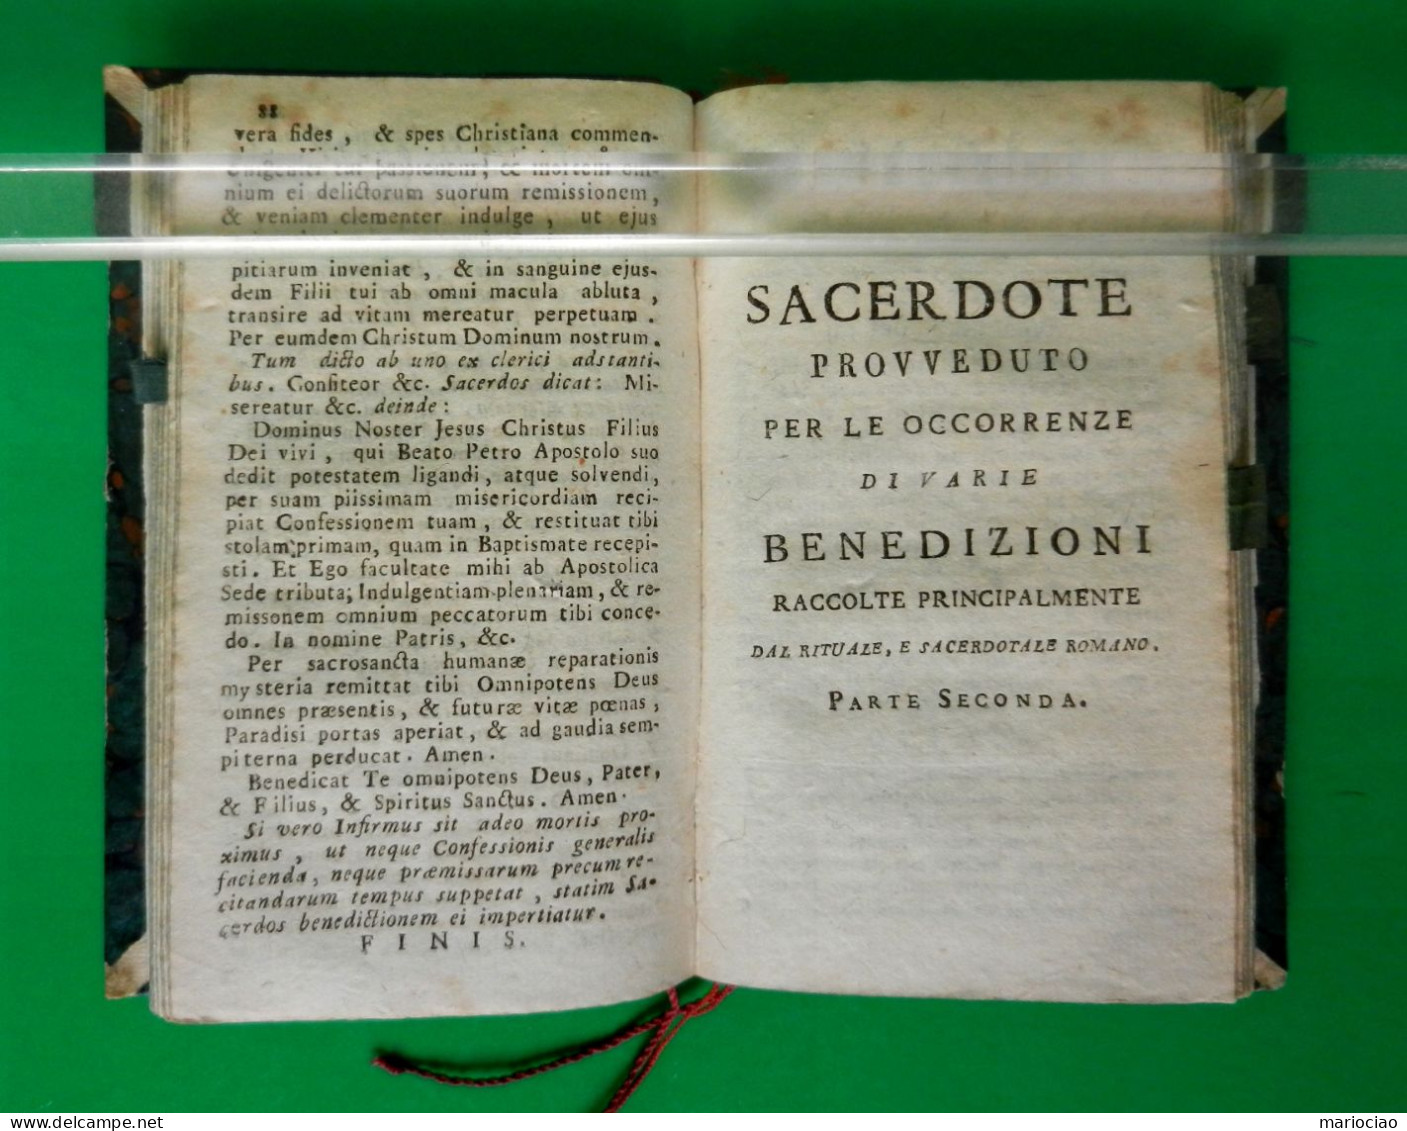 L-IT ESORCISMO -Il Sacerdote Provveduto Per L'assistenza Dei Moribondi 1802 Venezia - Old Books